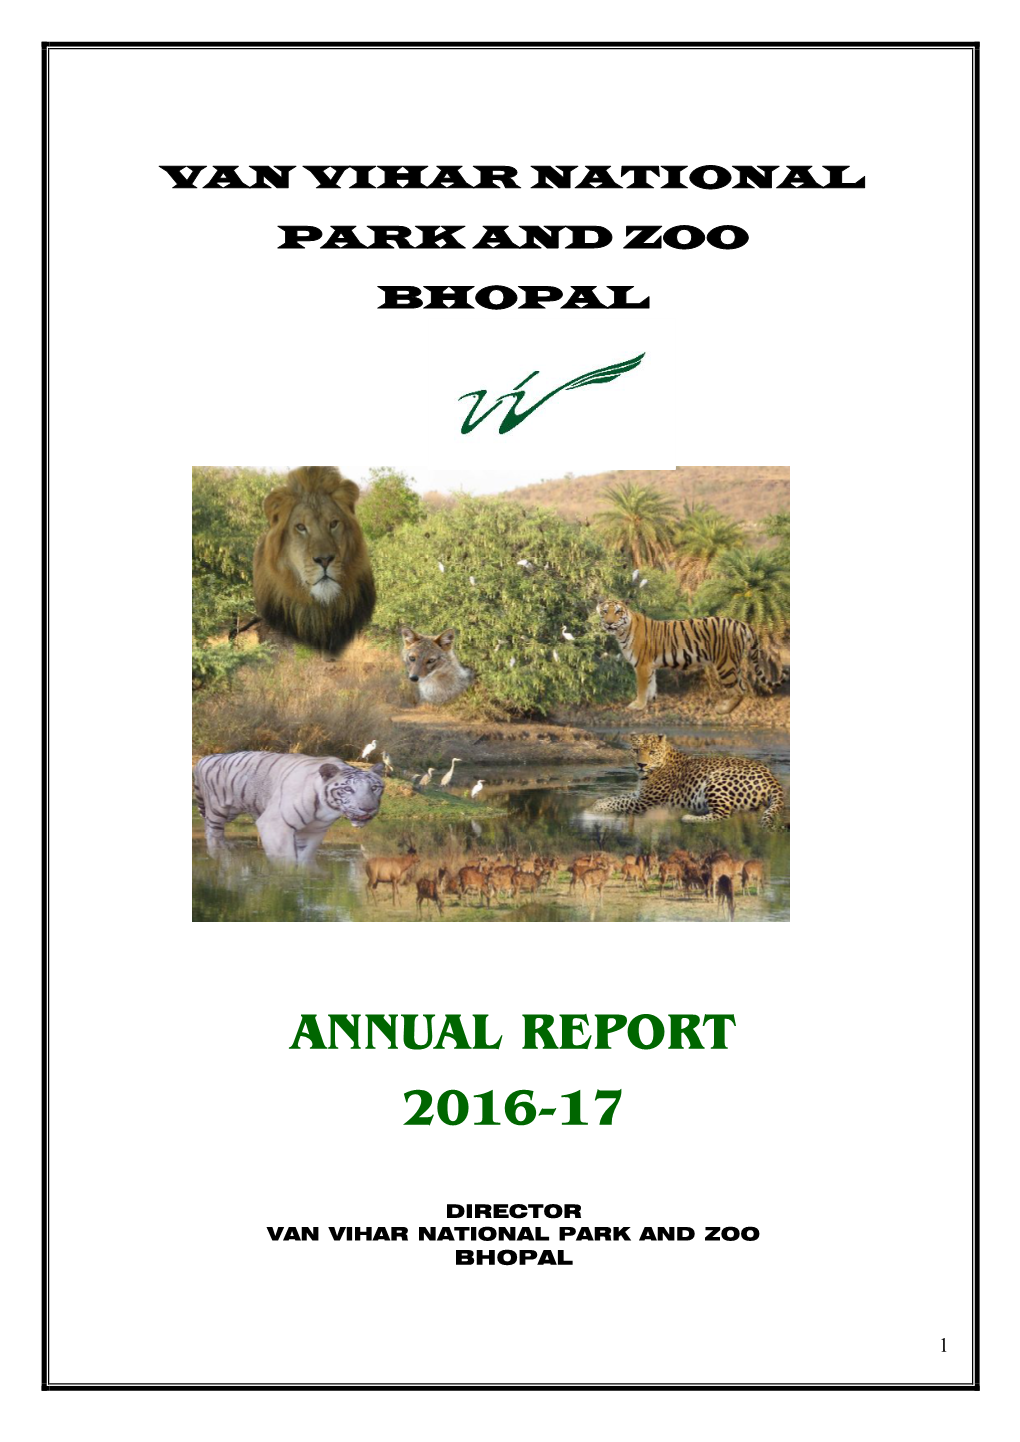 Annual Report 2016-17 Van Vihar